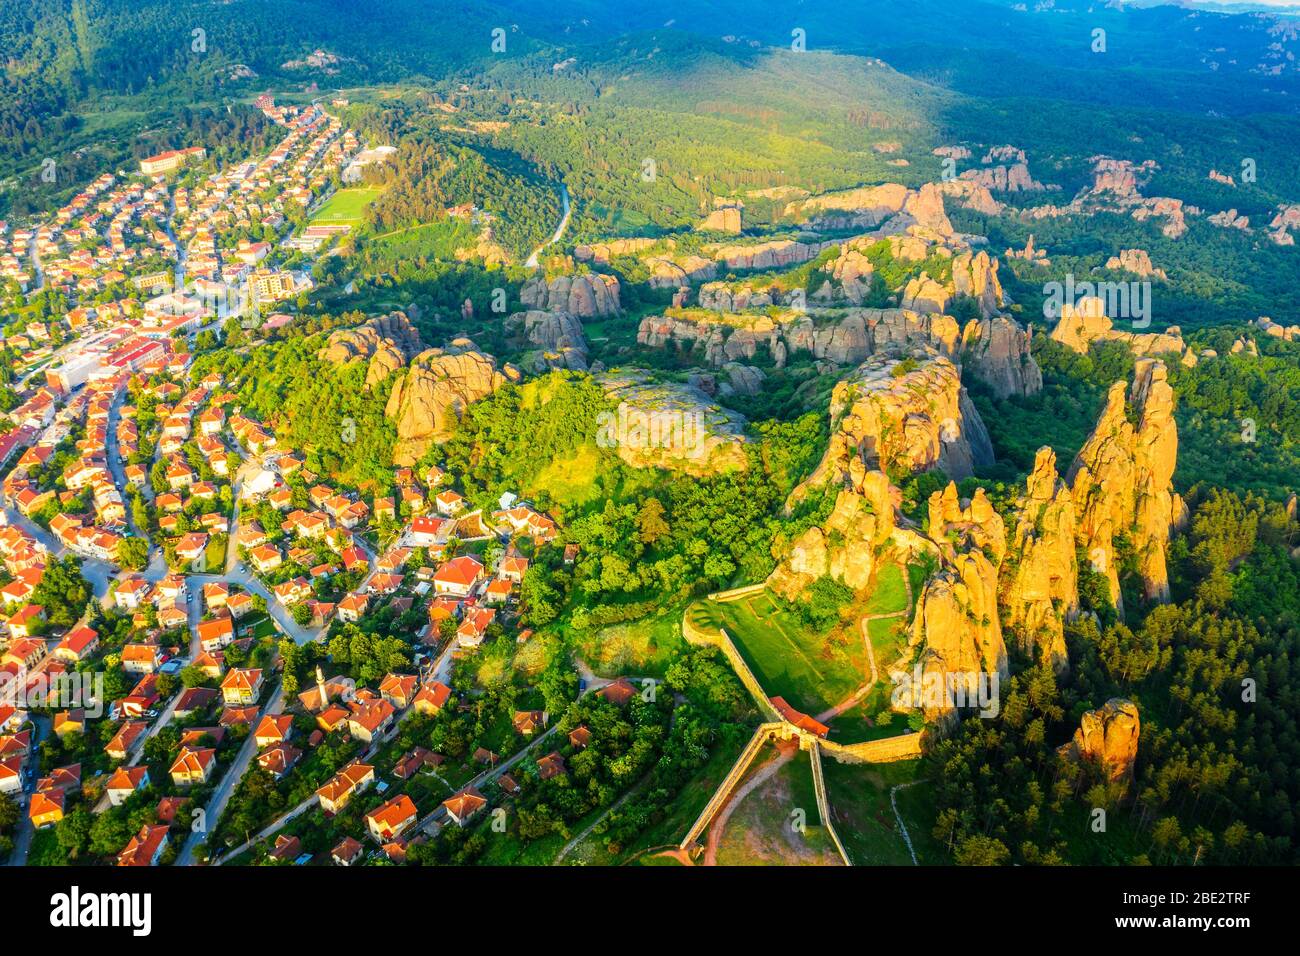 Europa, Bulgaria, Belogradchik, vista aérea de las formaciones rocosas de la fortaleza de Kaleto Rock Foto de stock